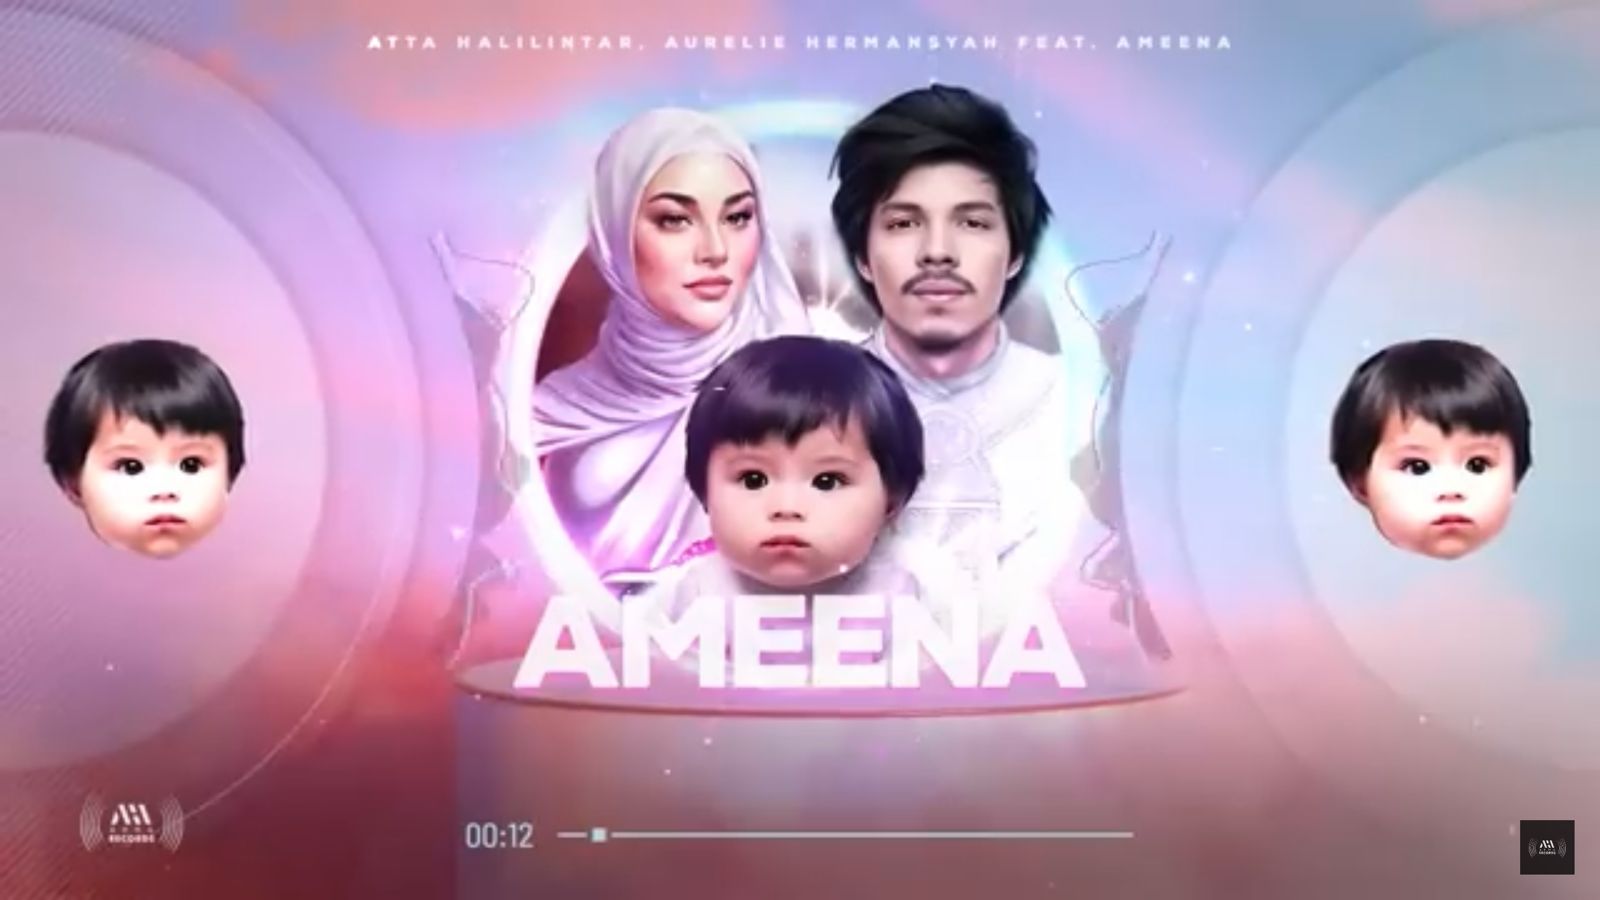 Lagu AMEENA - Atta Halilintar & Aurel Hermansyah Feat Ameena Trending di YouTube, Ini Liriknya